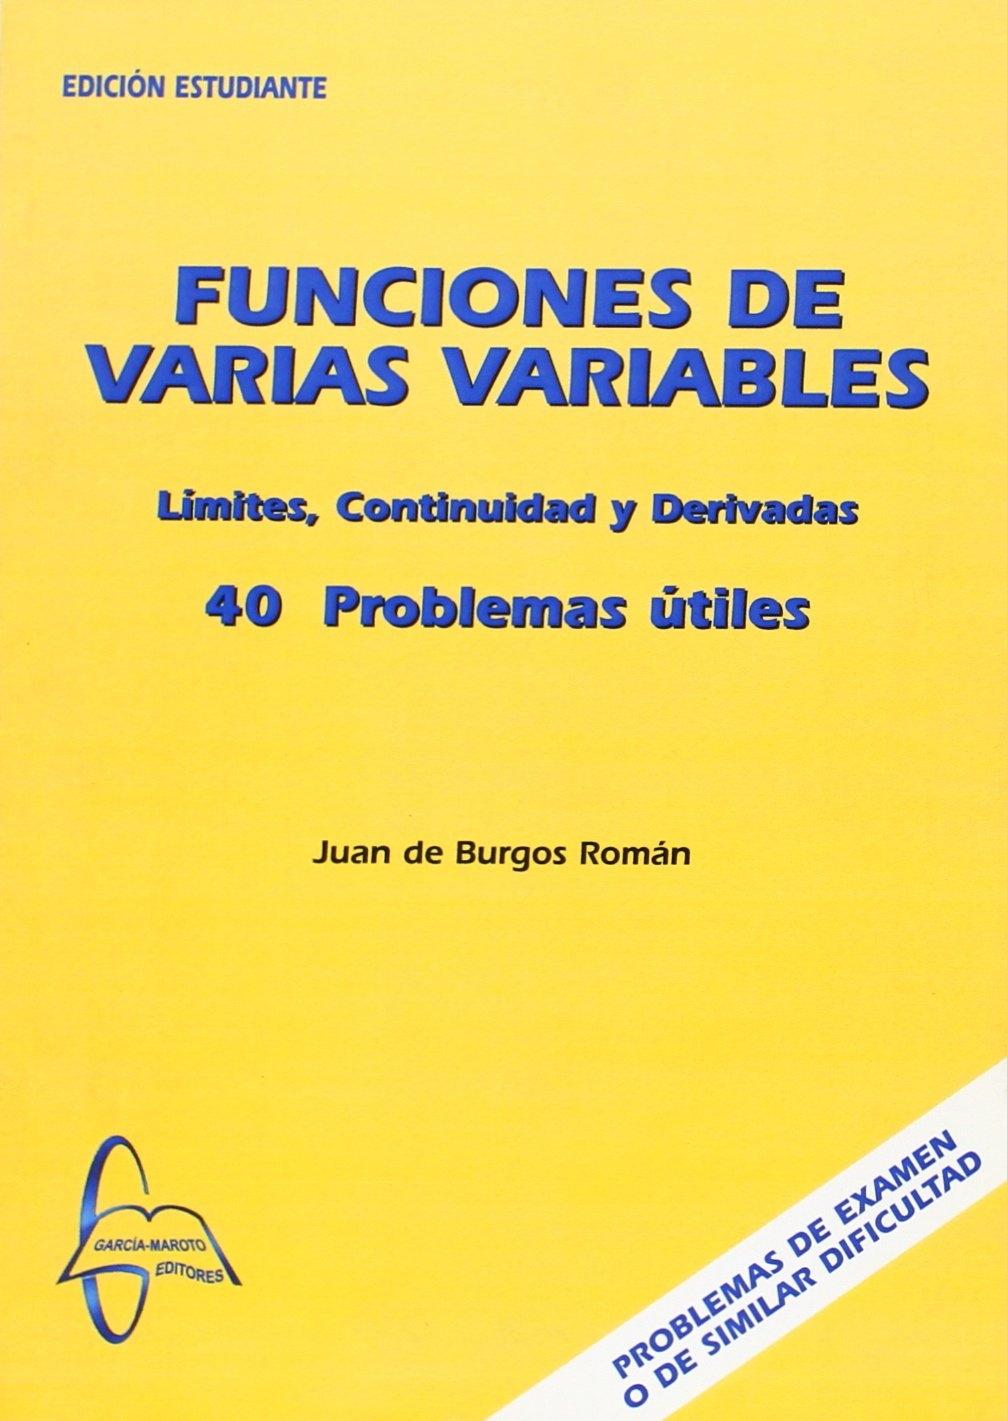 FUNCIONES DE VARIAS VARIABLES "40 PROBLEMAS ÚTILES"